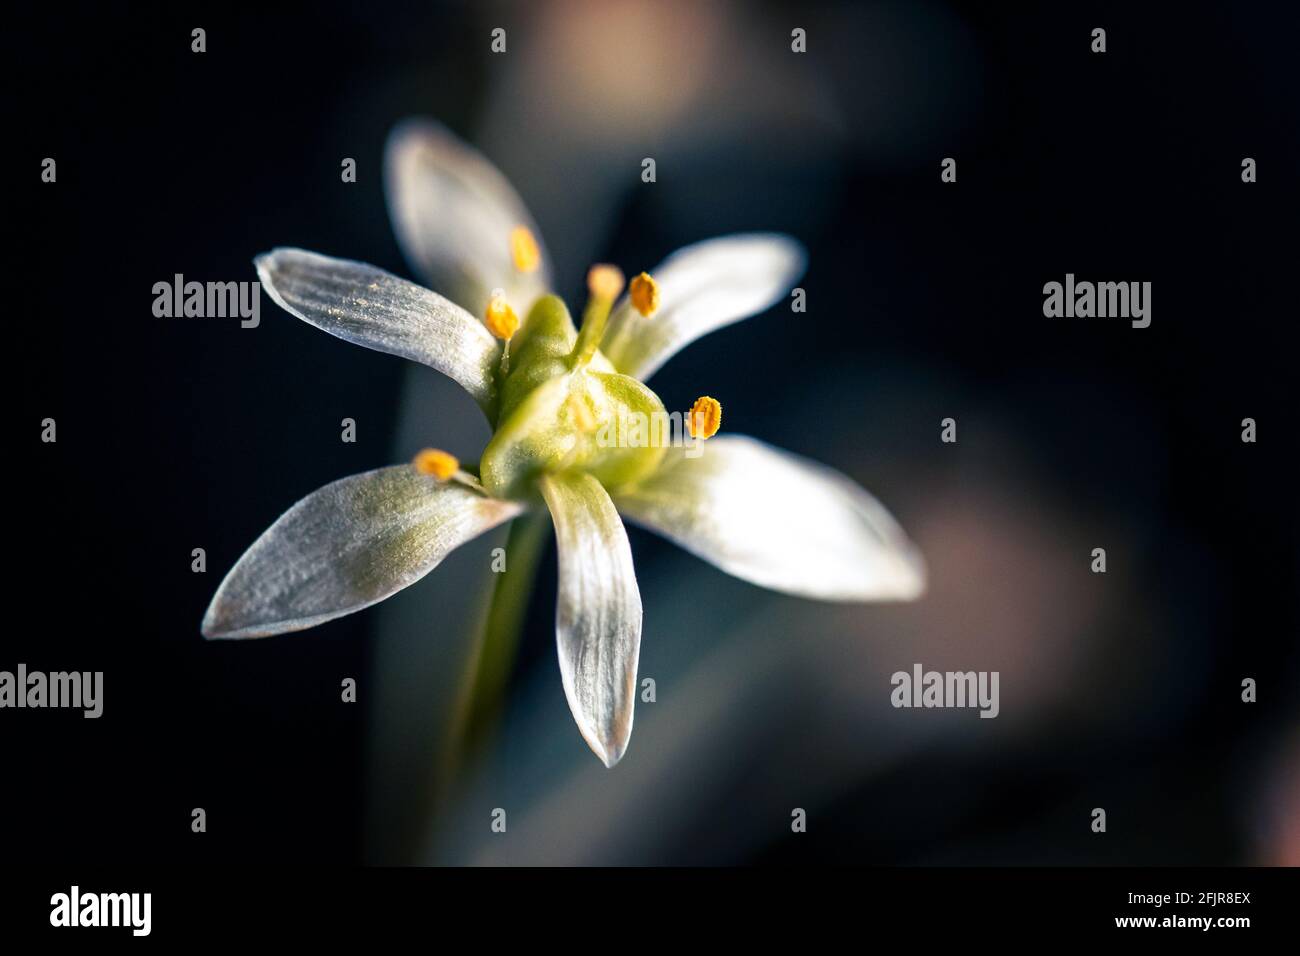 Macro whil fiore con polline. Foto di alta qualità Foto Stock